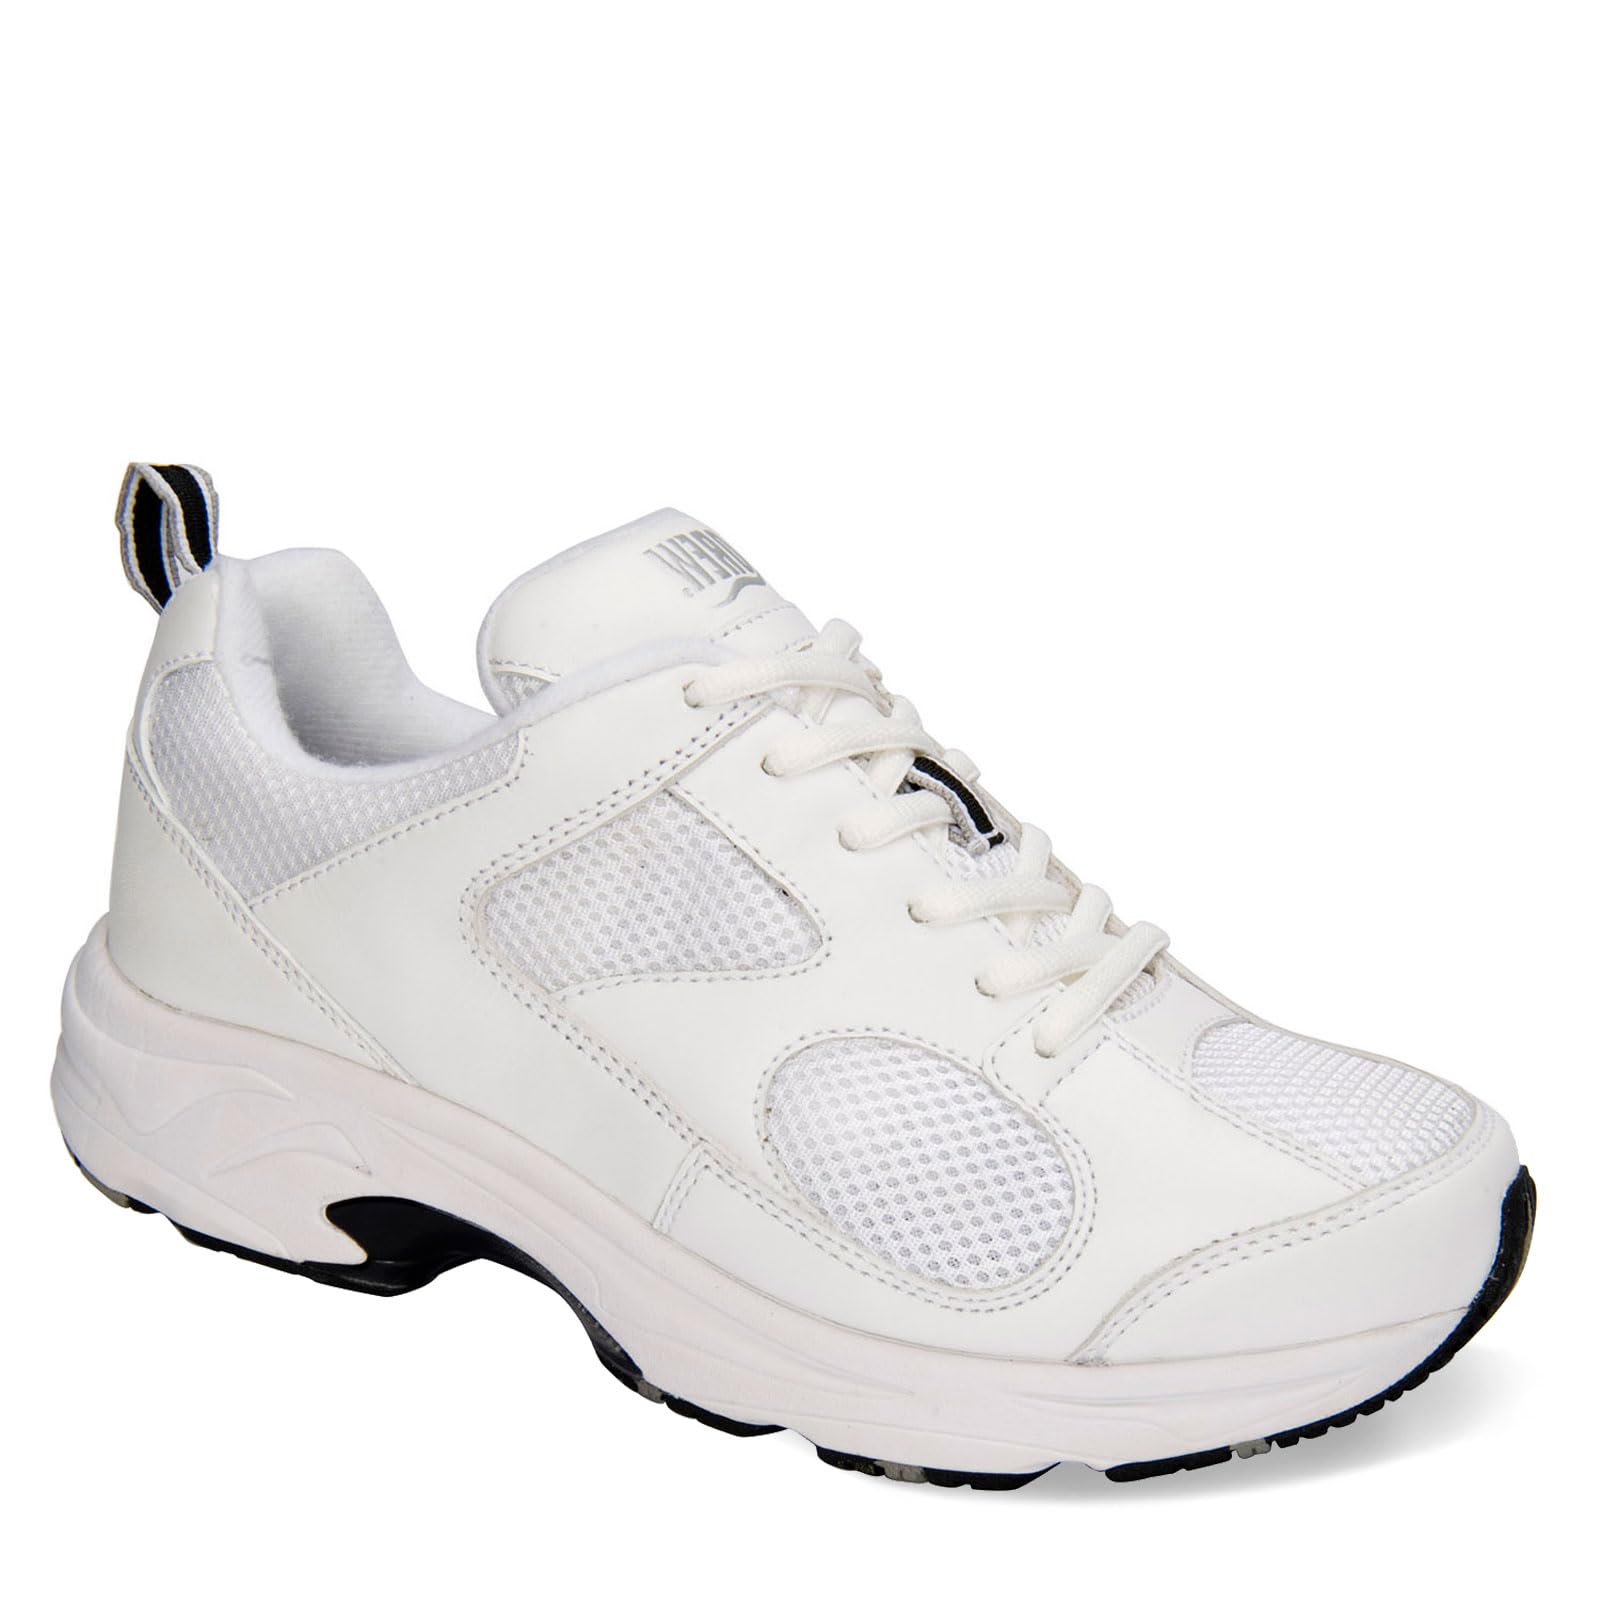 Drew Shoe Women's Flash II Sneakers,White,8.5 W